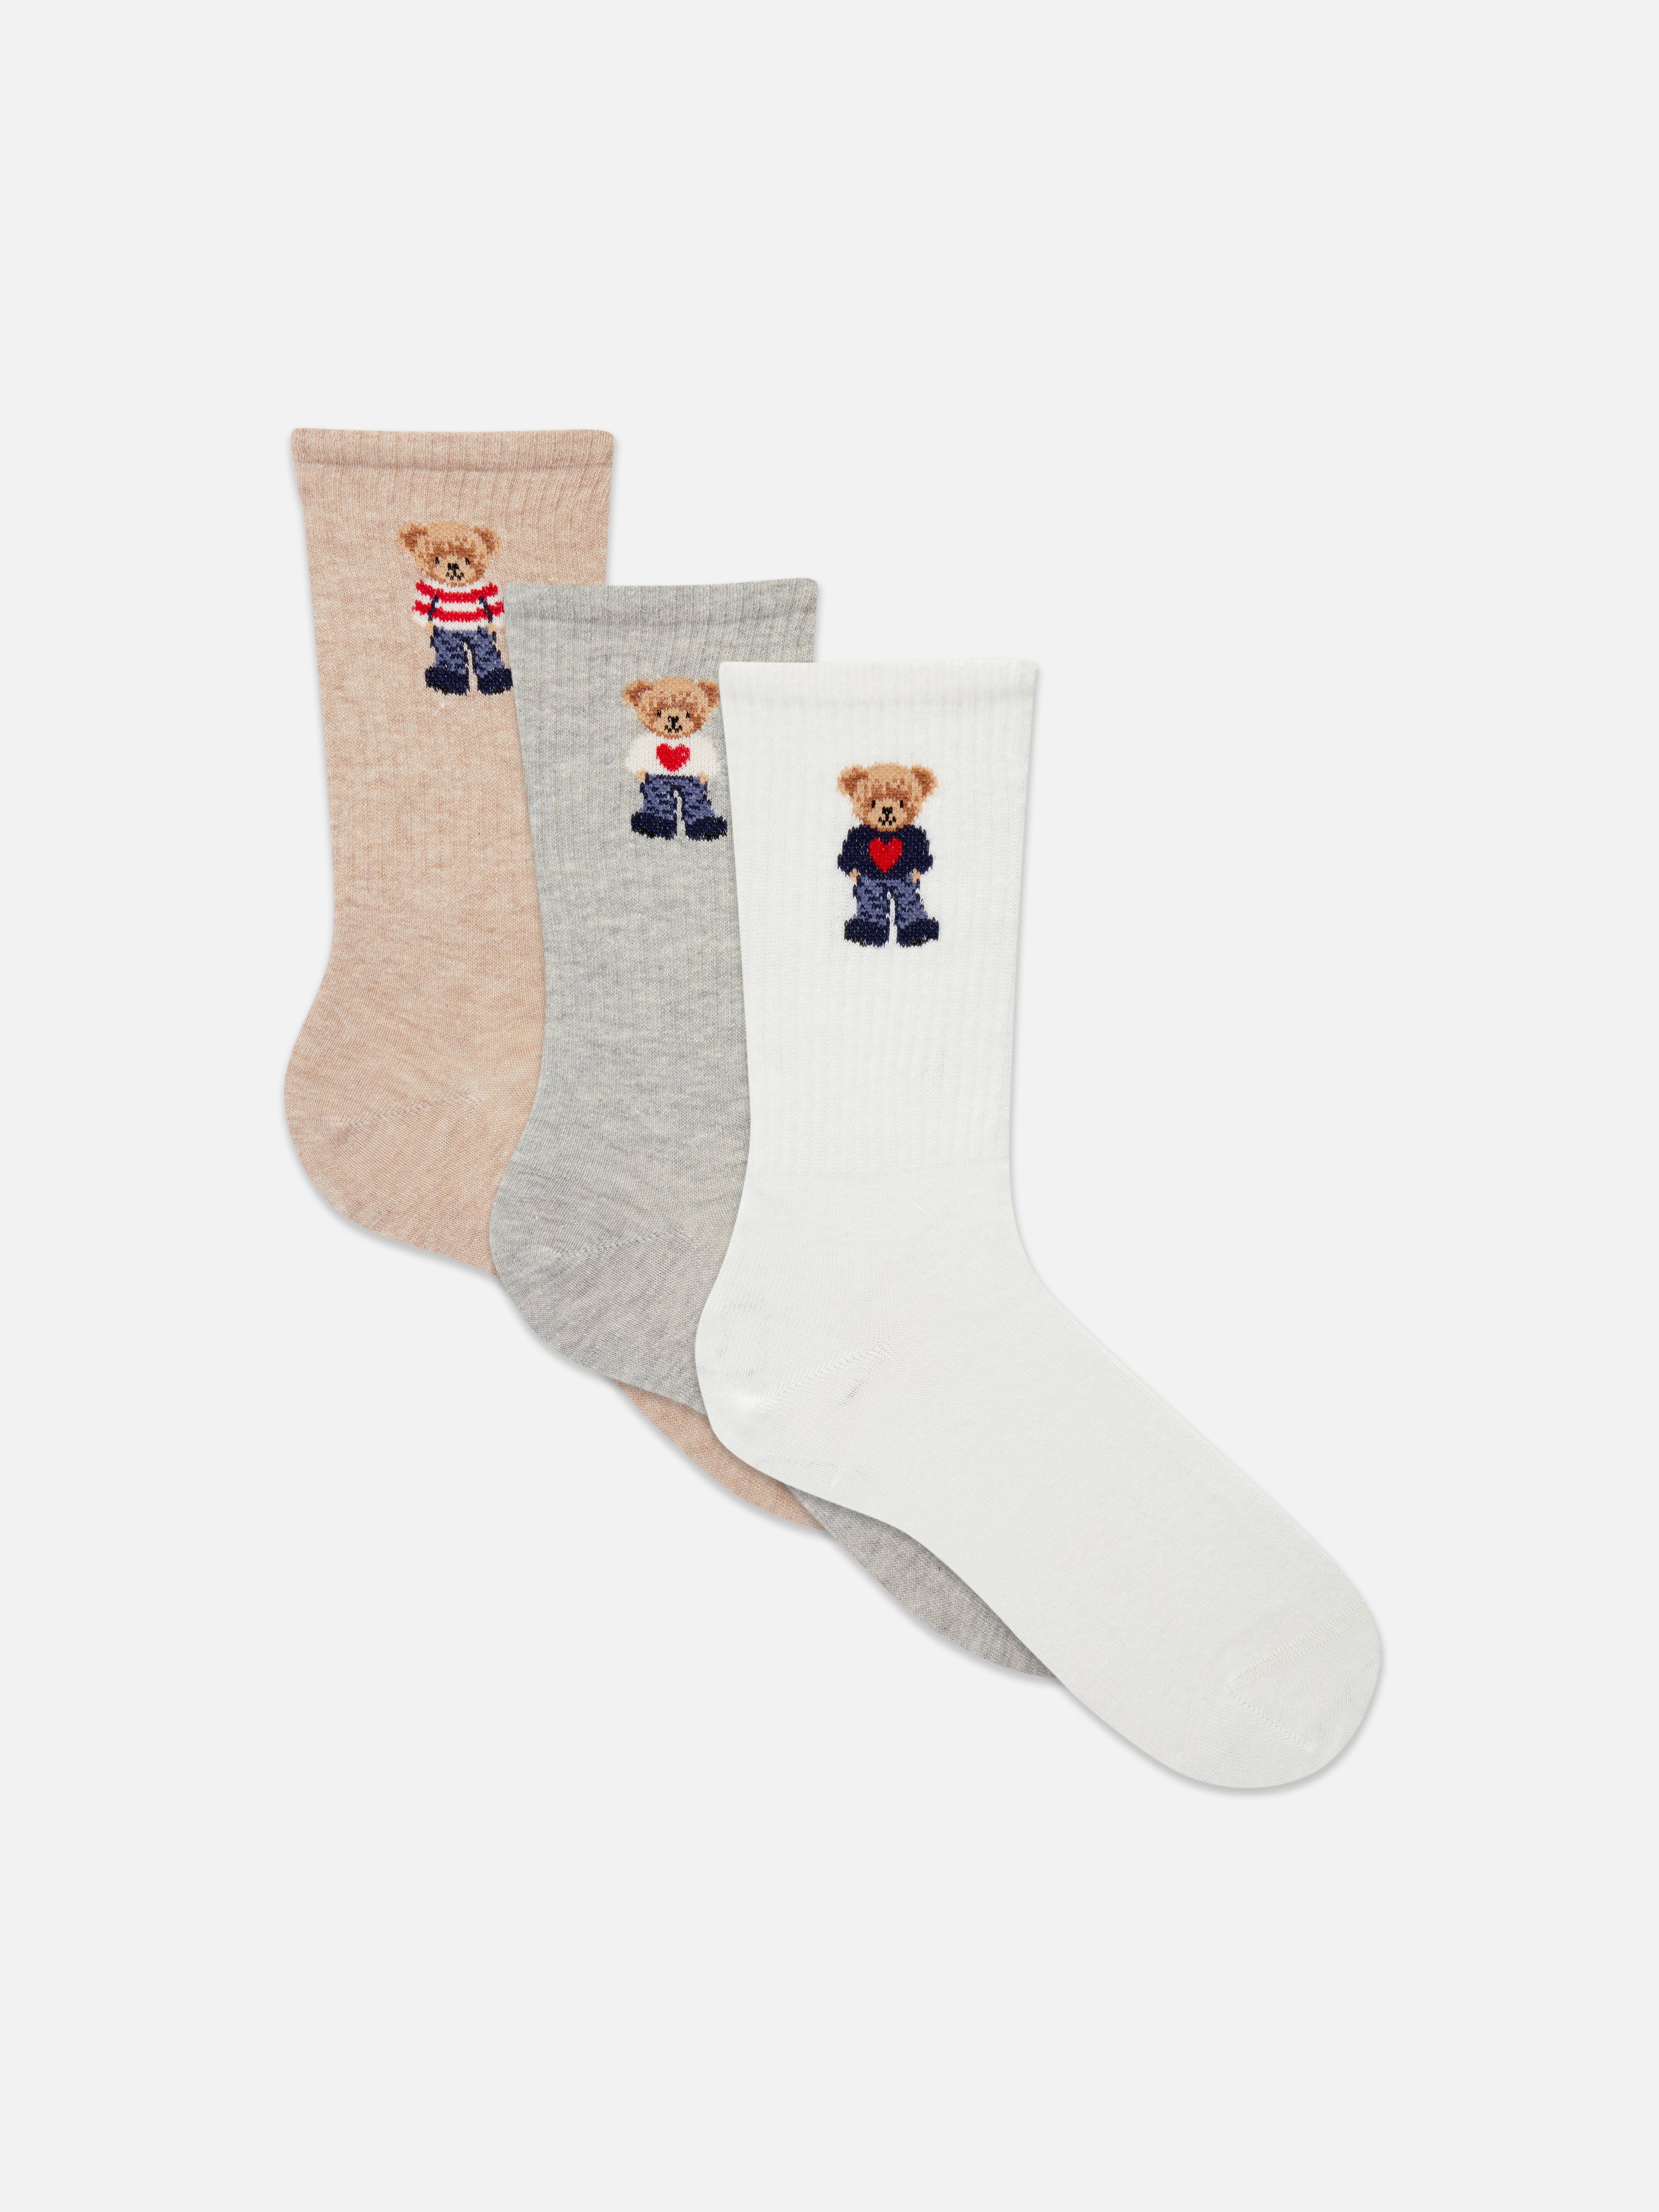 3 páry ponožek s medvídkem